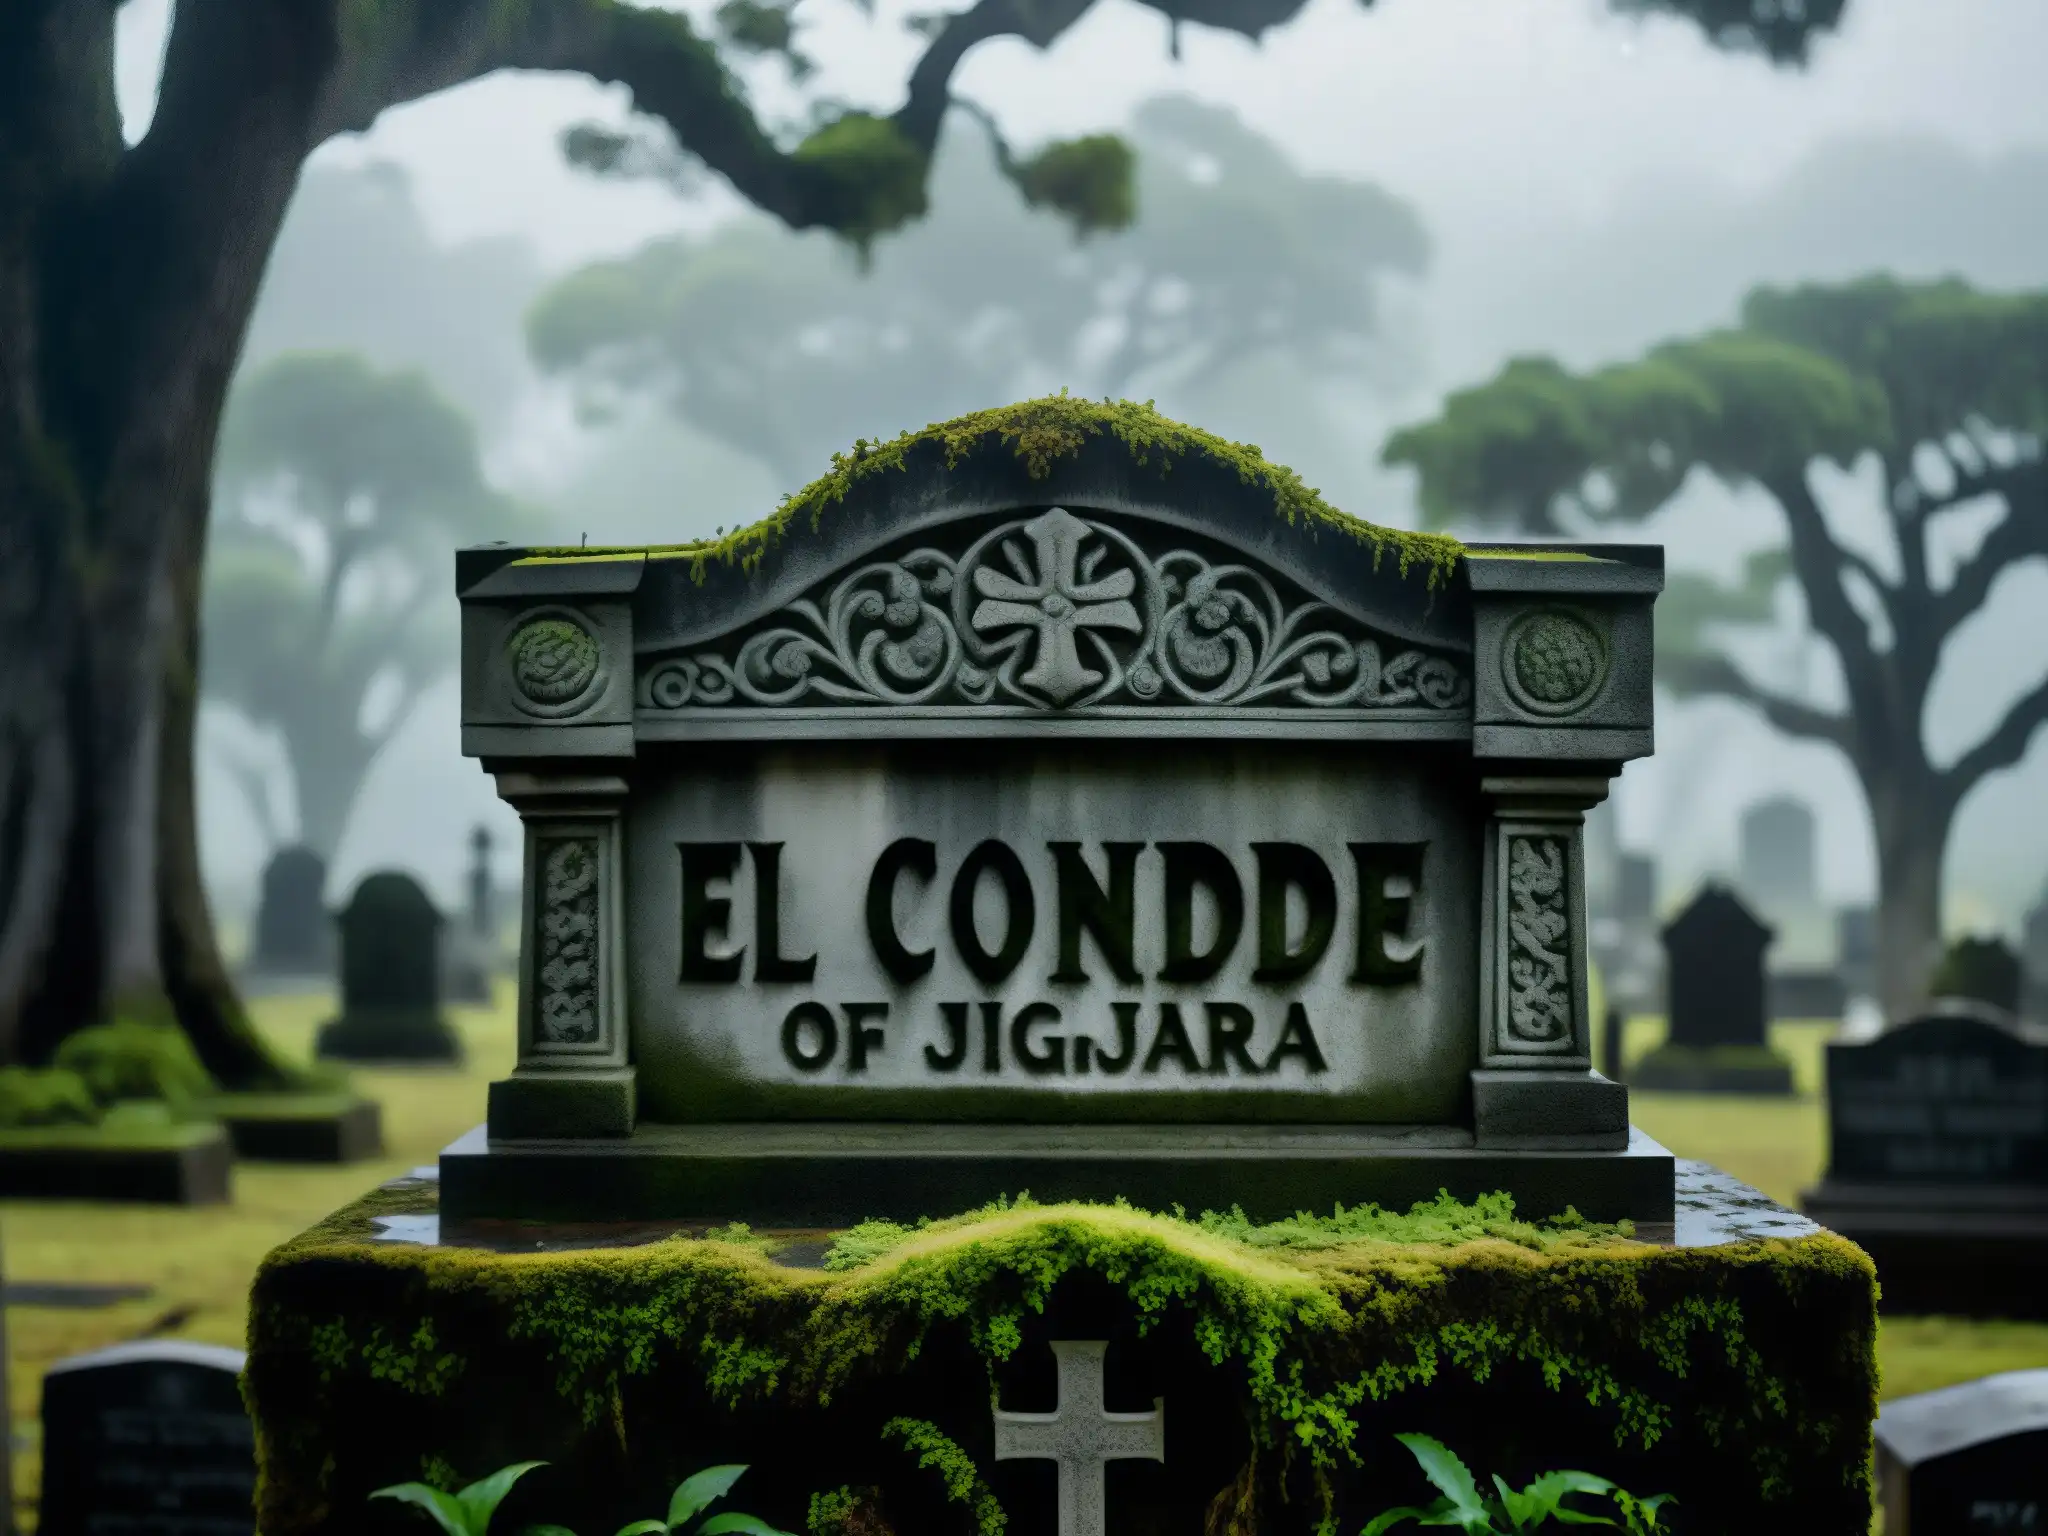 La tumba del supuesto vampiro de Guadalajara, 'El Conde', cubierta de musgo, rodeada de árboles retorcidos y una neblina tenue, bajo un cielo gris